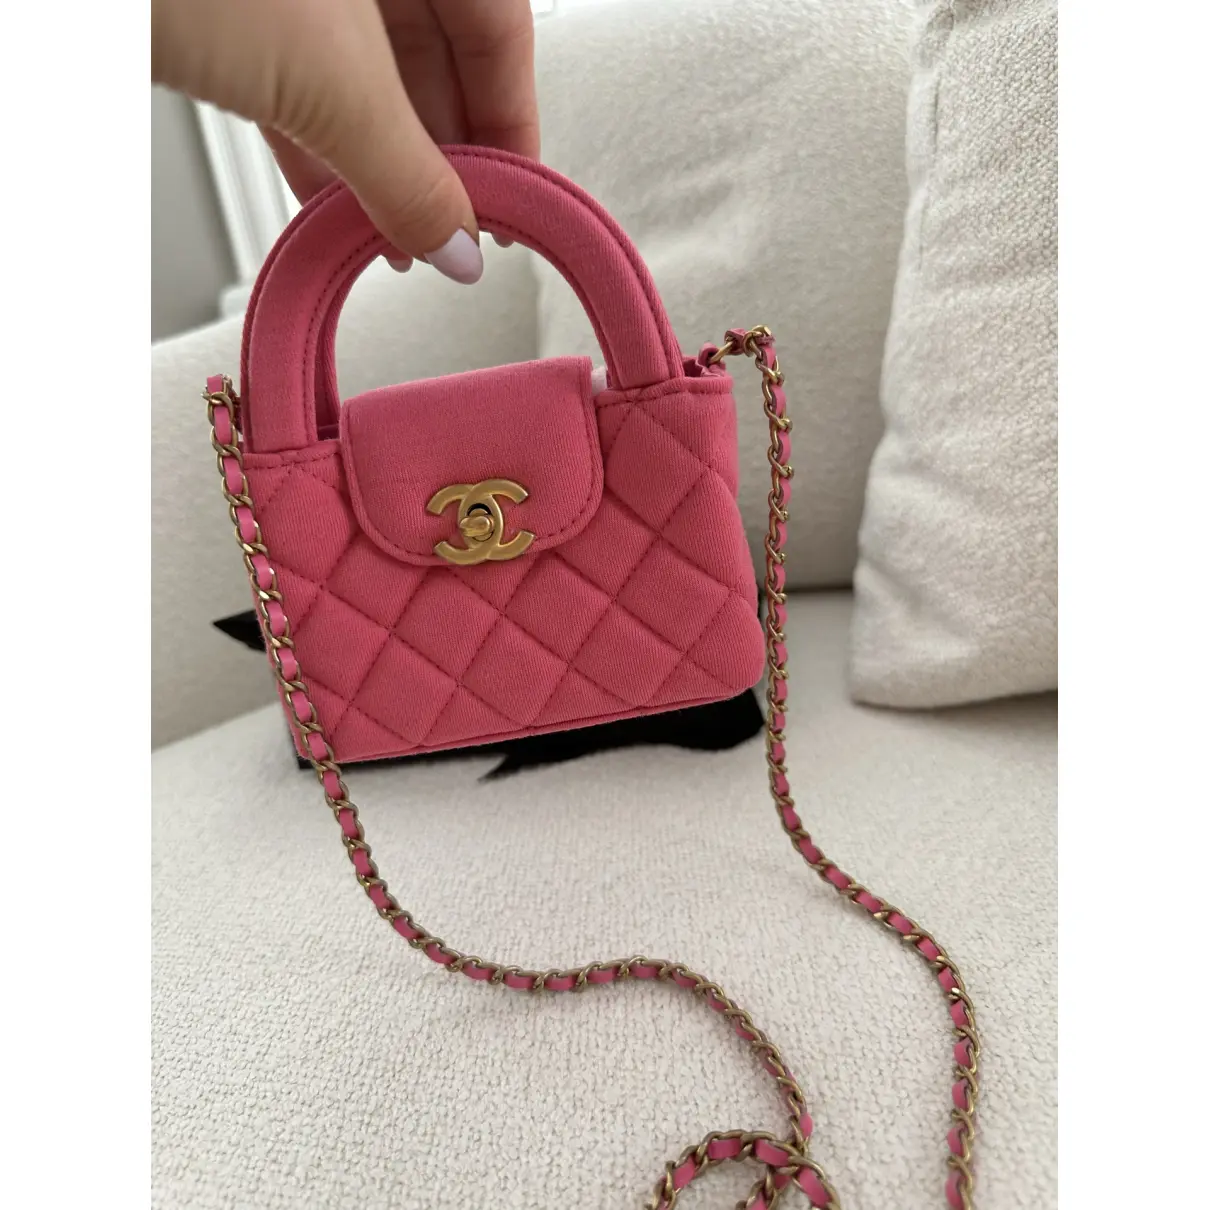 Petite Shopping Tote cloth handbag Chanel - Vintage